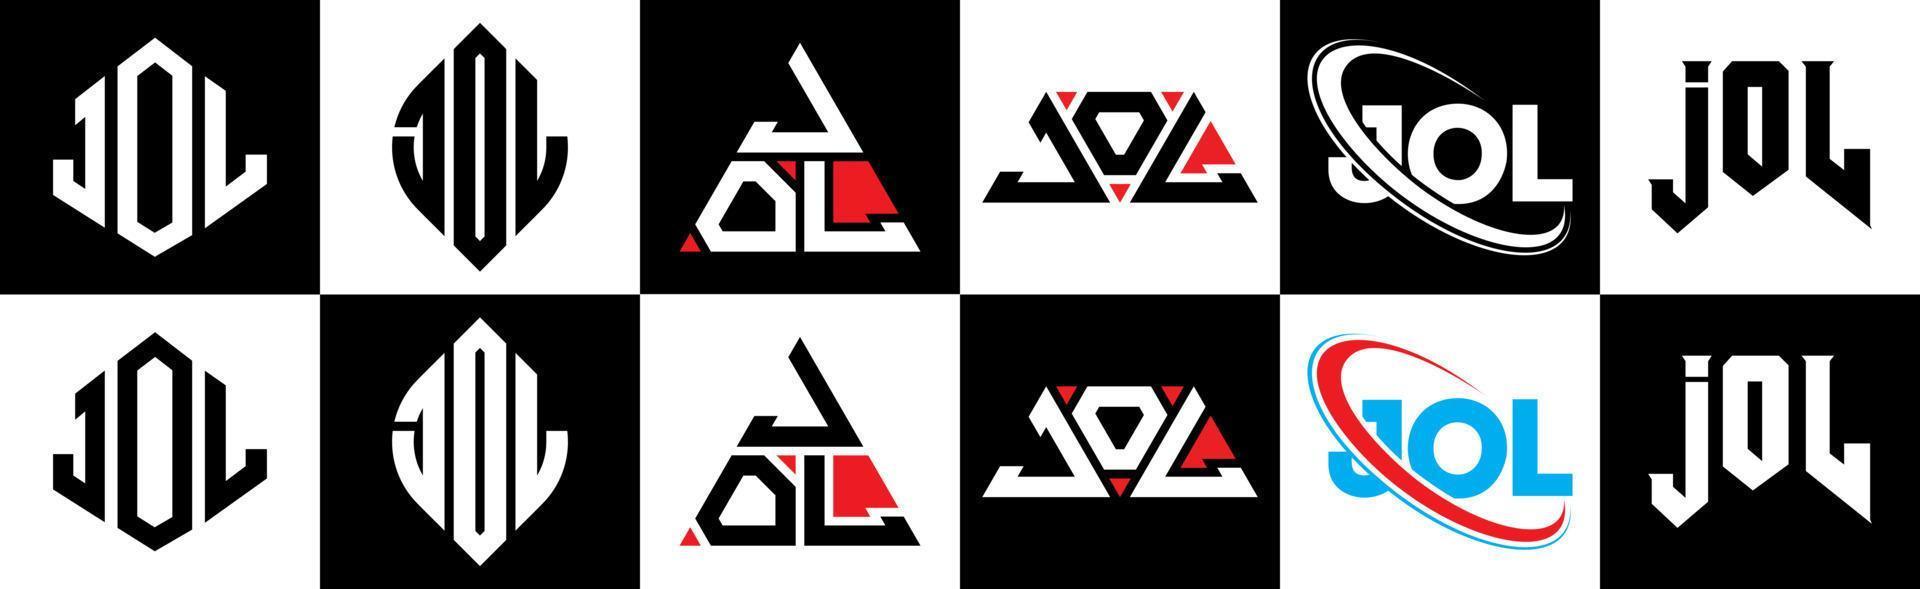 Jol-Buchstaben-Logo-Design in sechs Stilen. Jol-Polygon, Kreis, Dreieck, Sechseck, flacher und einfacher Stil mit schwarz-weißem Buchstabenlogo in einer Zeichenfläche. Jol minimalistisches und klassisches Logo vektor